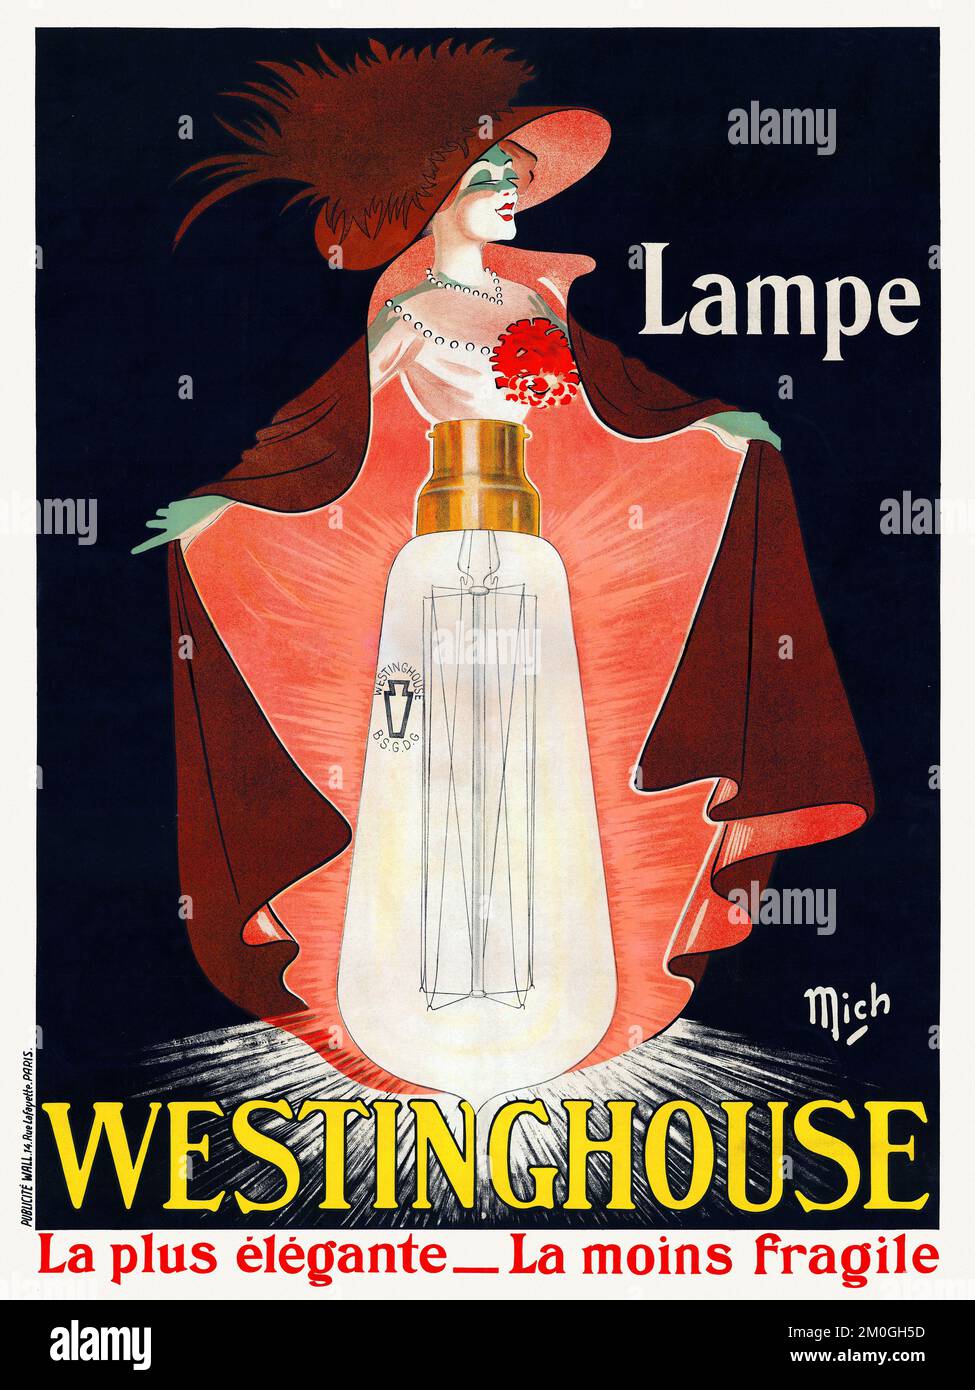 Lampe Westinghouse, la plus élégante, la moins fragile by Jean Marie Michel Liebeaux Mich (1881-1923). Poster published in 1912 in France. Stock Photo